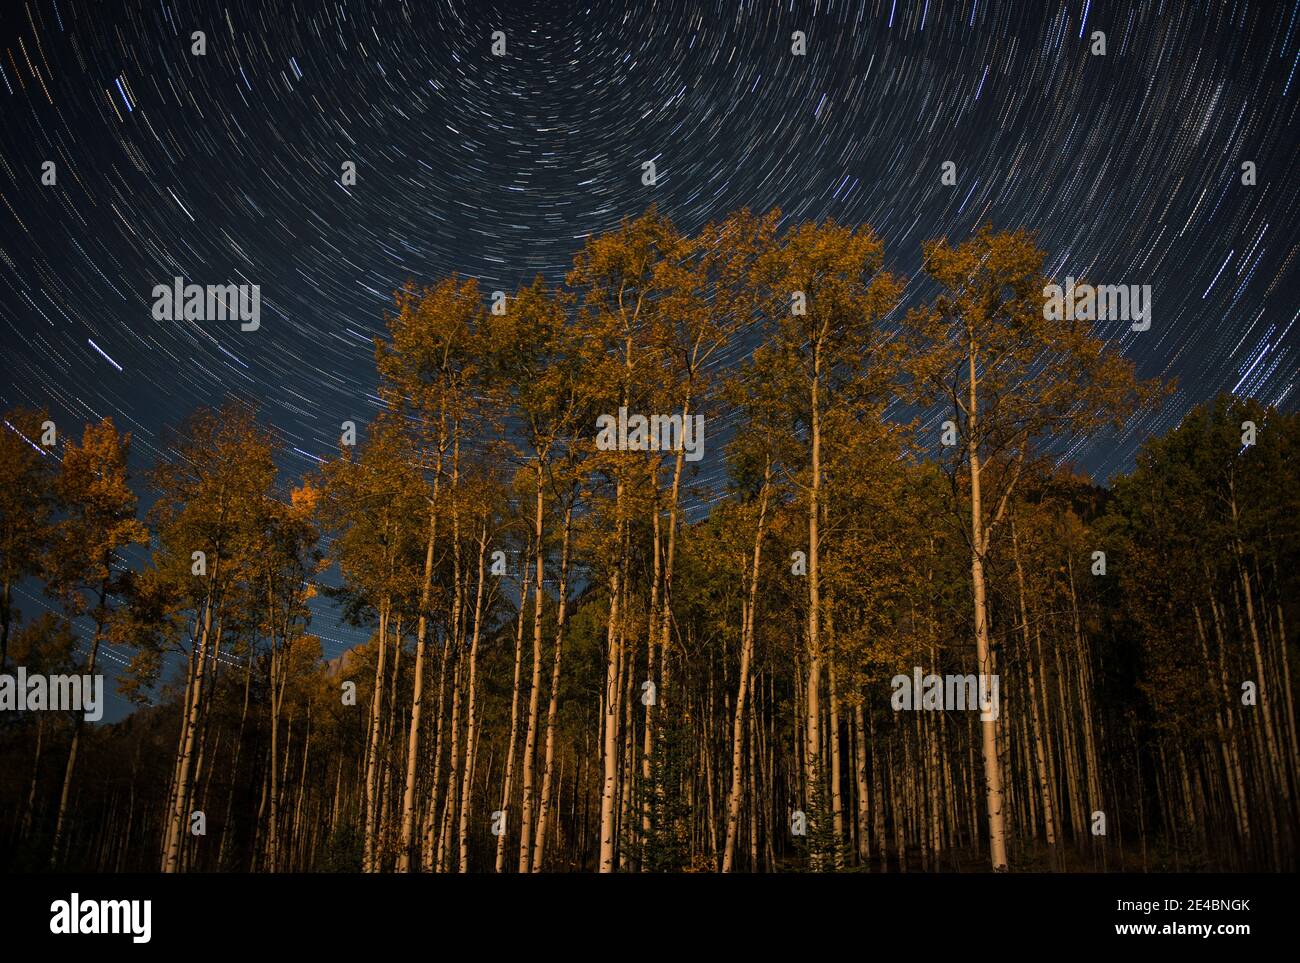 Pistes étoiles au-dessus des peupliers à l'automne, Alberta, Canada Banque D'Images